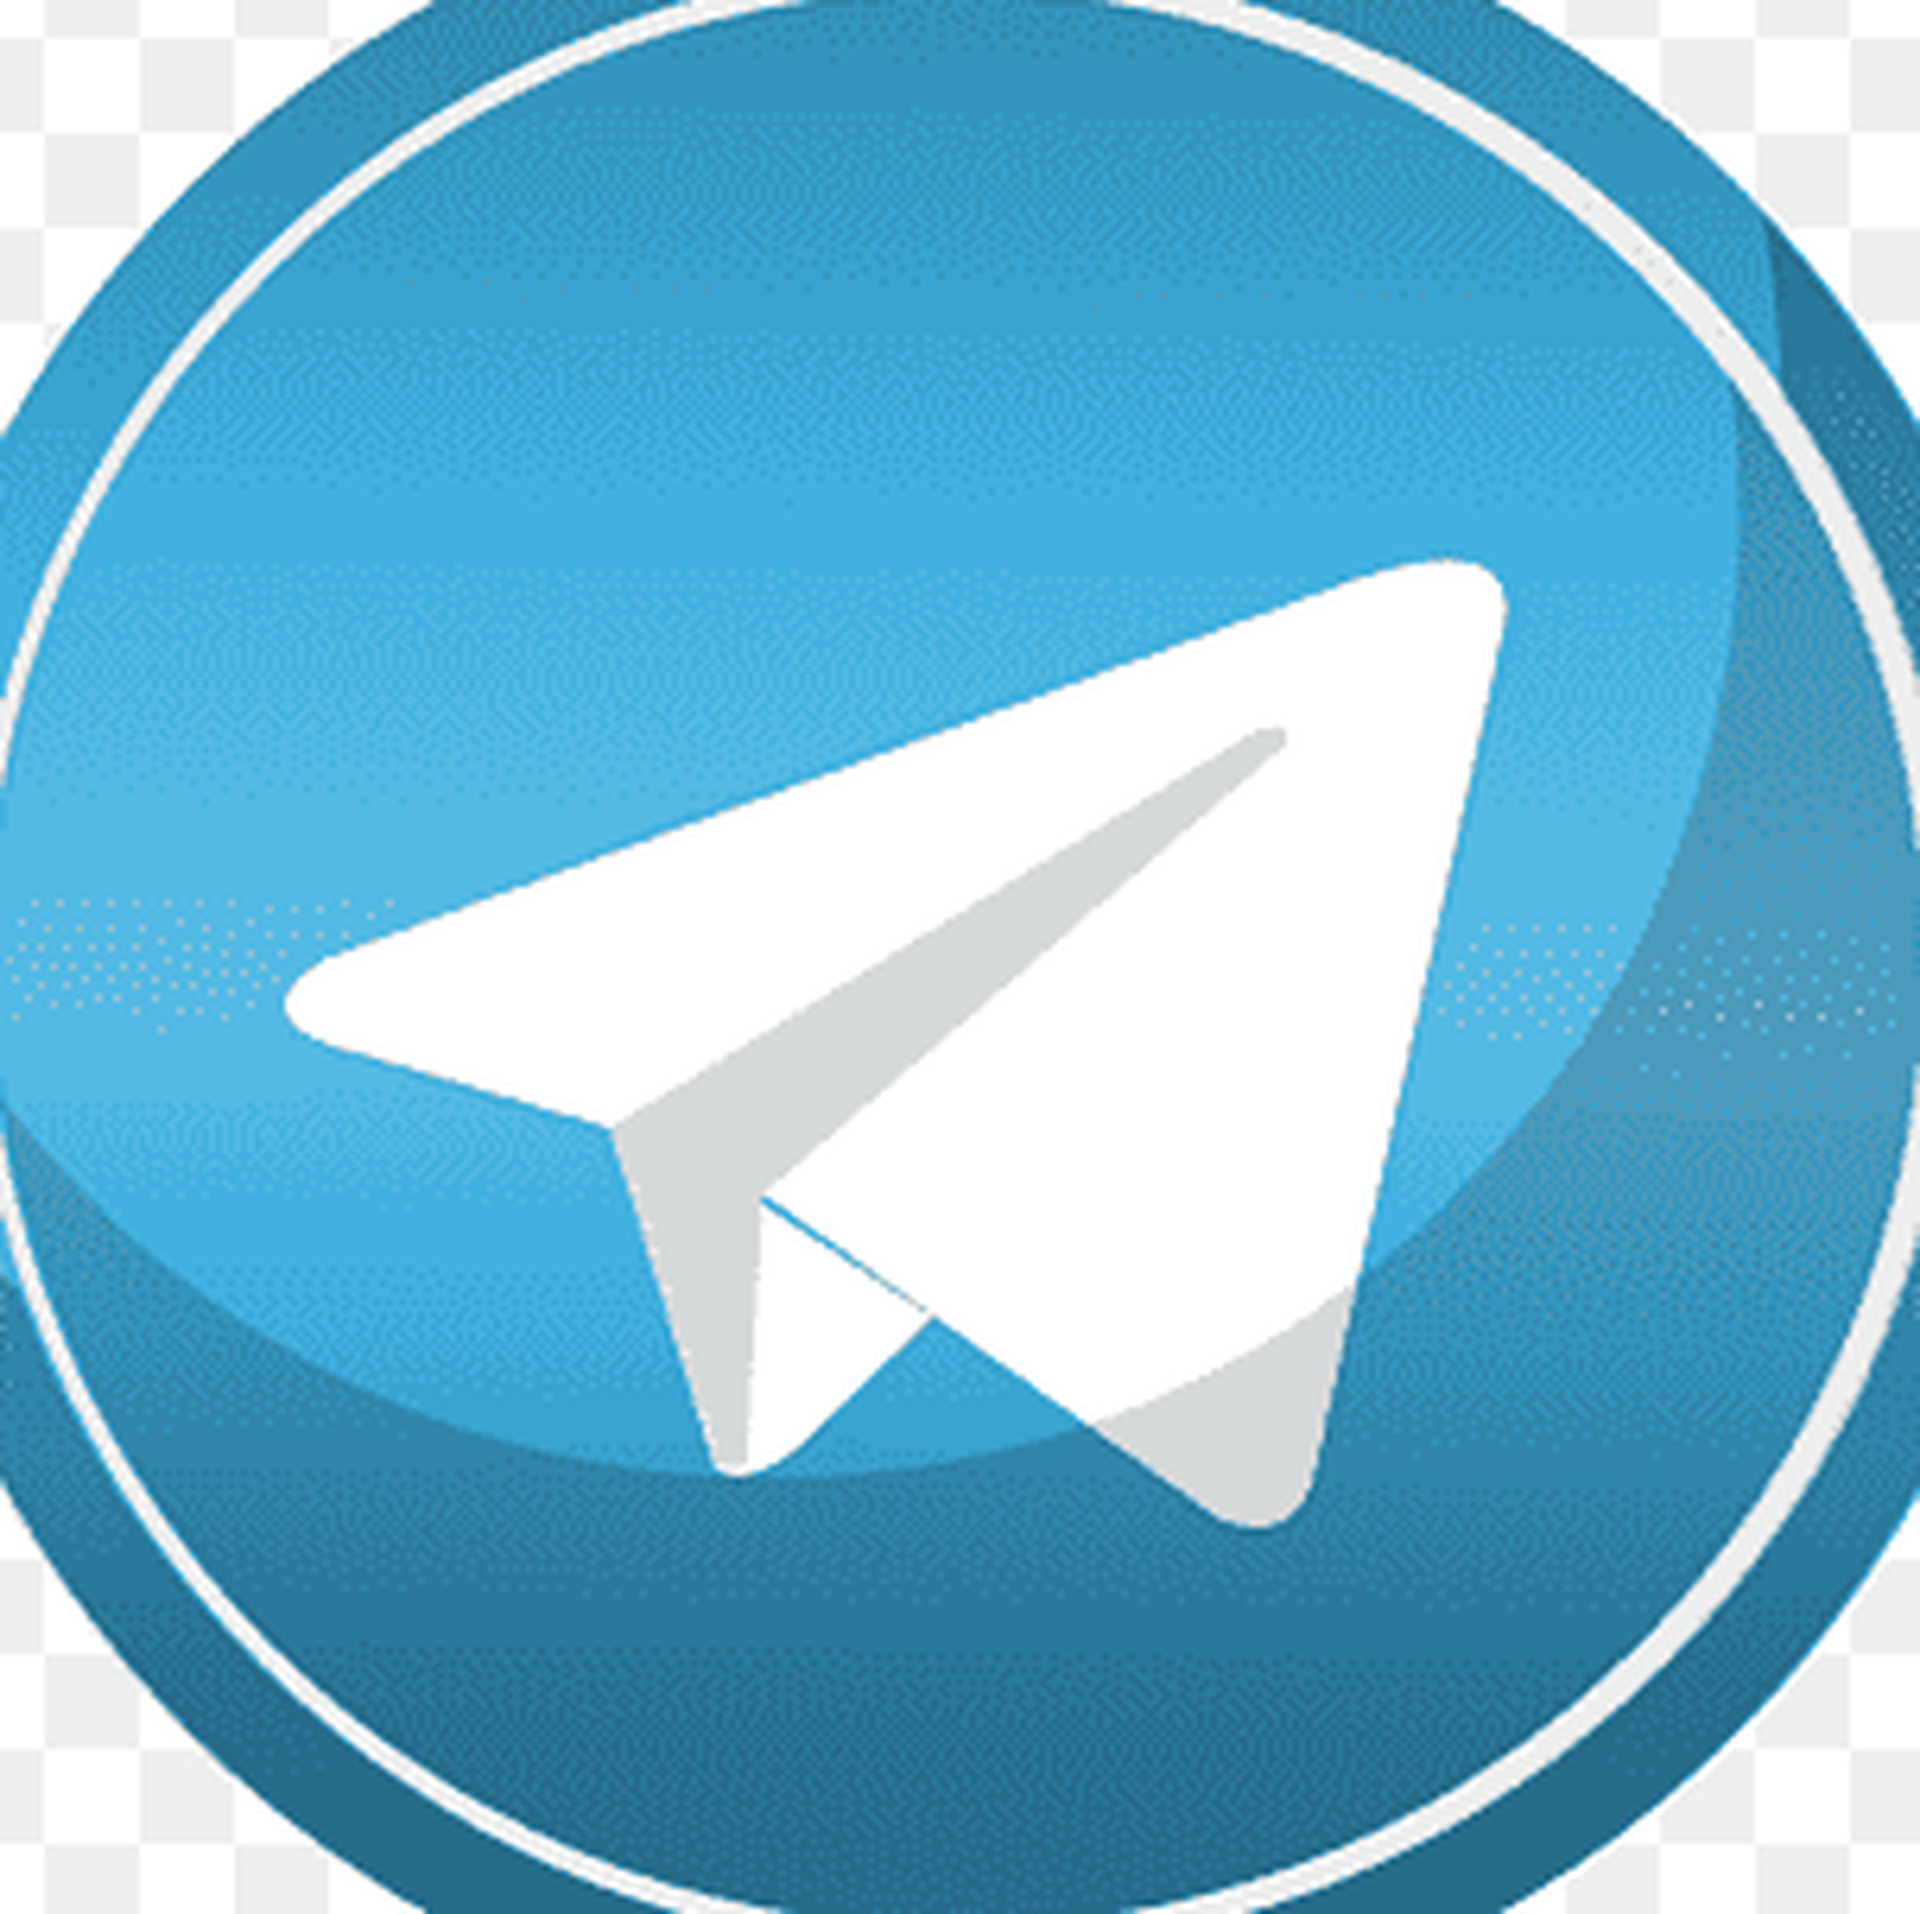 Telegram web file. Логотип телеграм. Логотип телеграм маленький. Пиктограмма телеграмм. Круглый значок телеграмма.